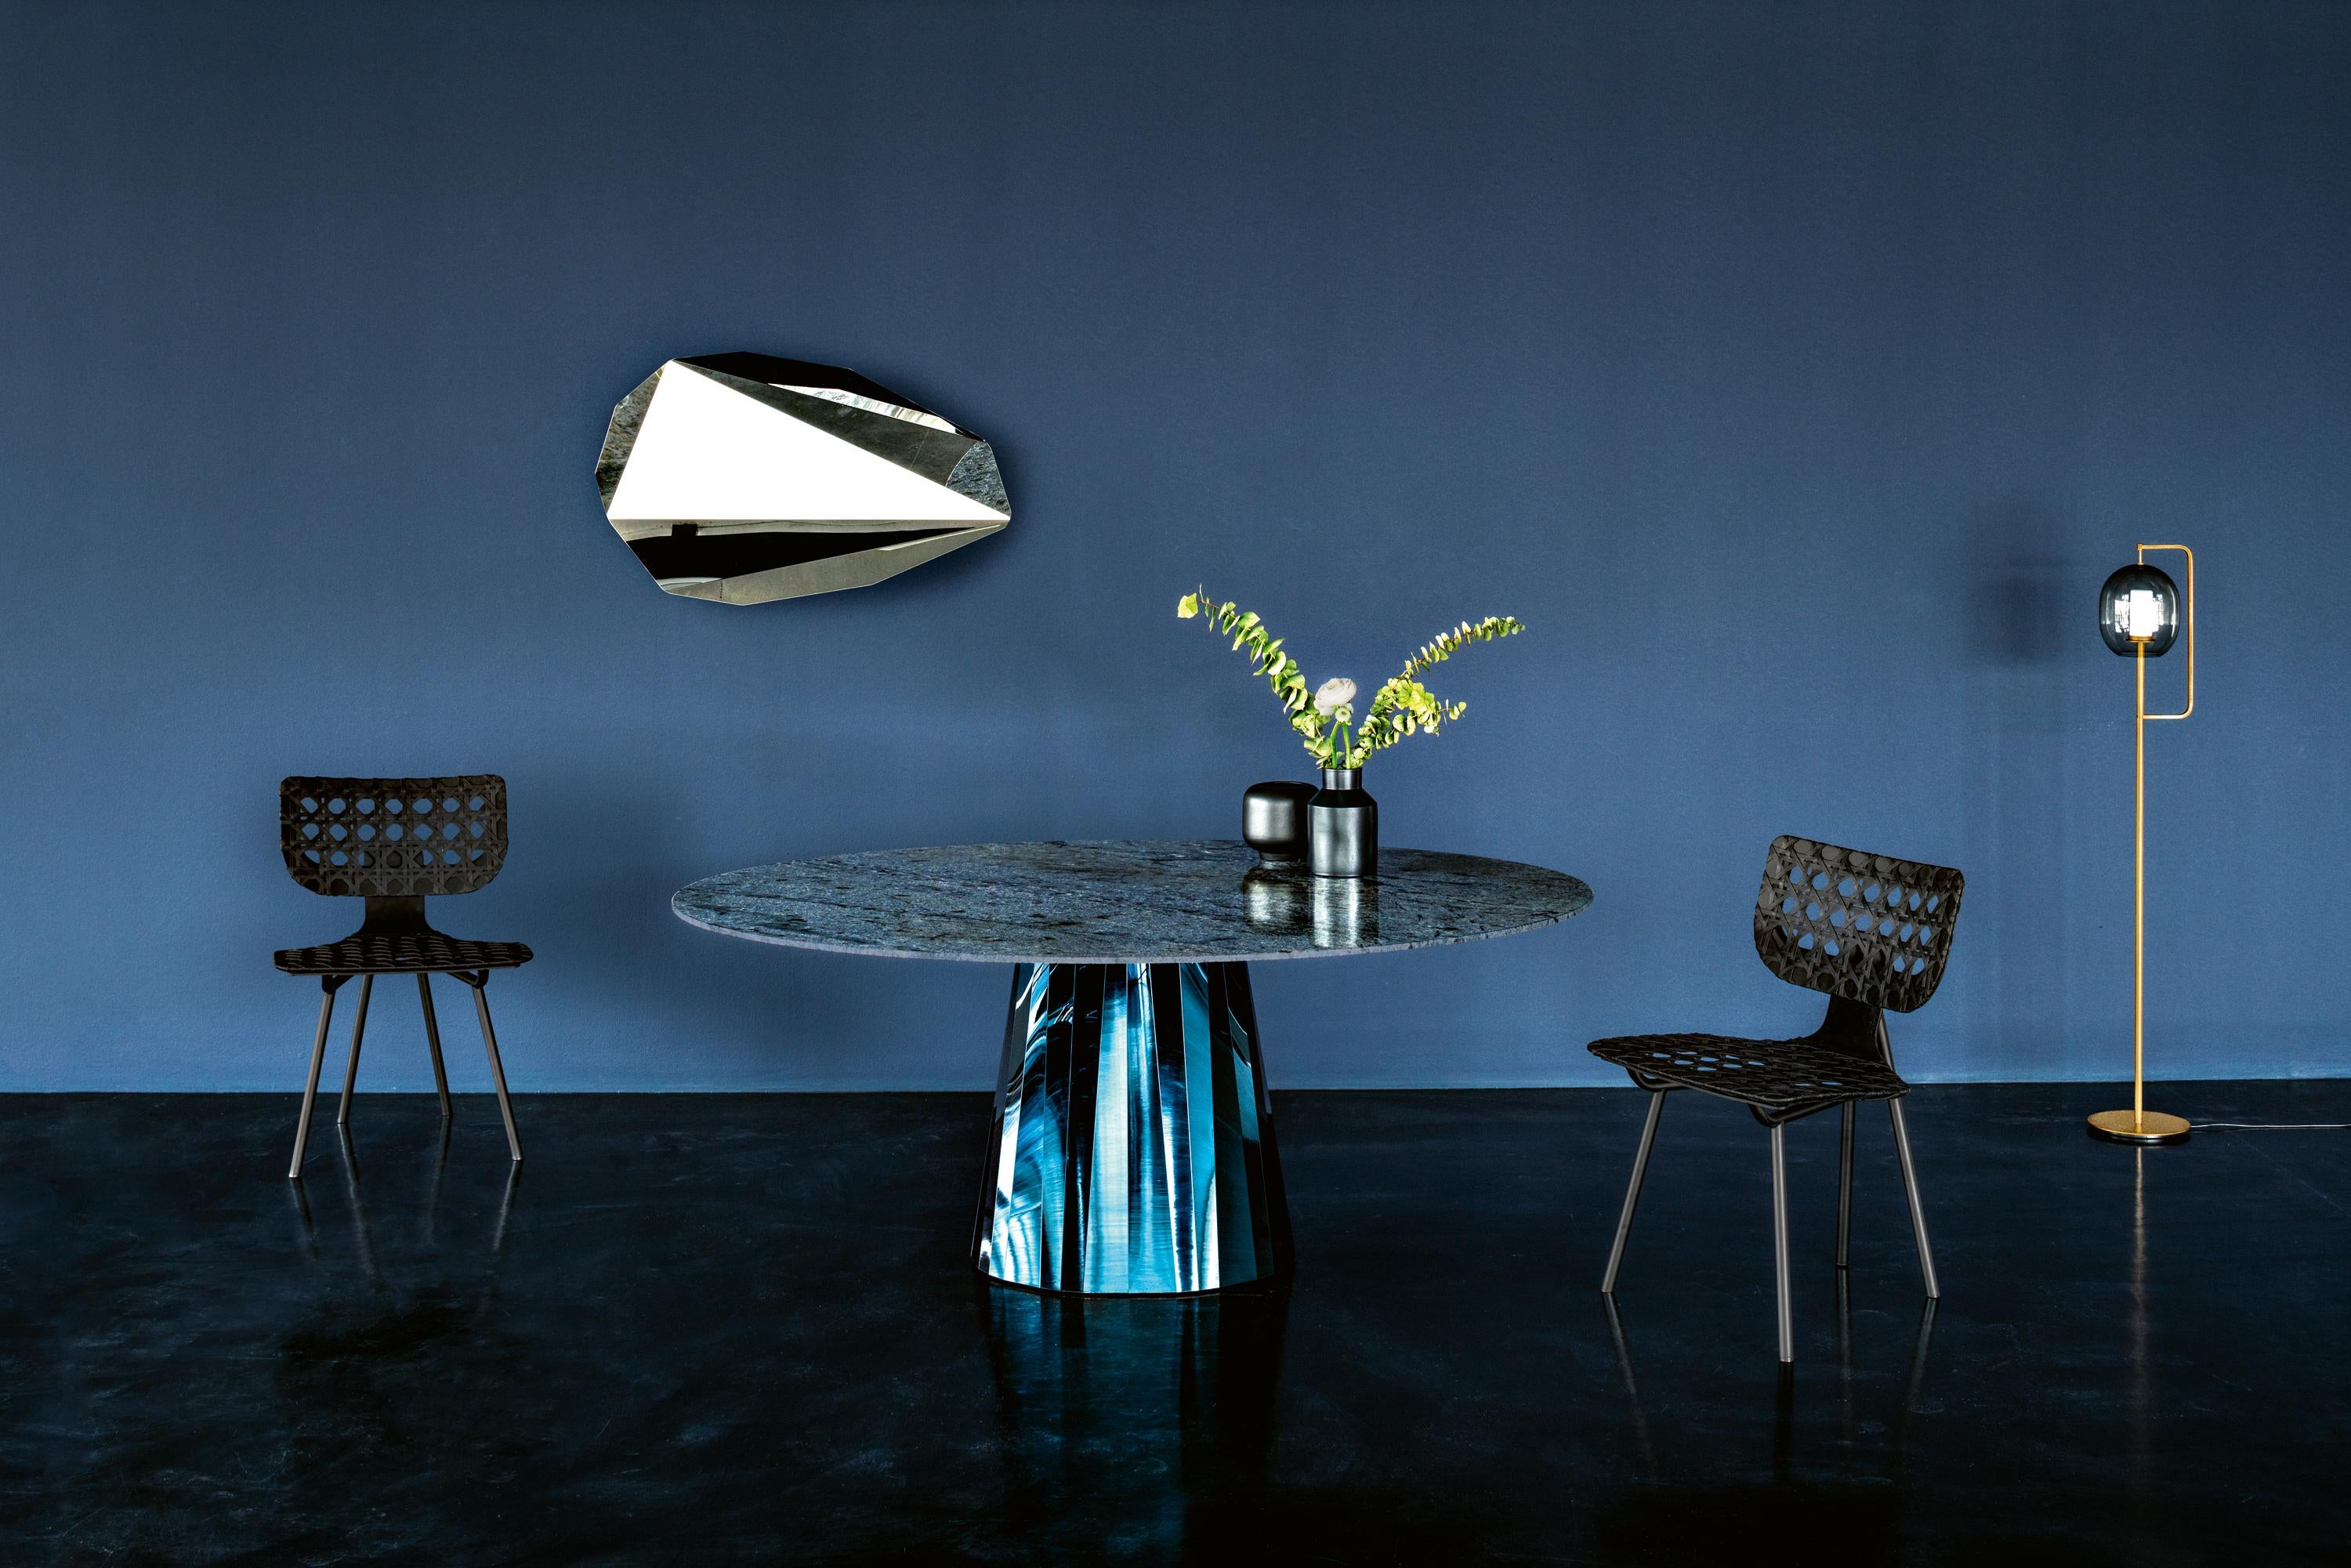 Mit der Tischserie Pli bringt die französische Designerin Victoria Wilmotte Objekte von ungewöhnlicher kristalliner Eleganz und verblüffender Geometrie in Wohnräume, Esszimmer oder Eingangsbereiche. Die Biegungen und Falten, die Pli seinen Namen